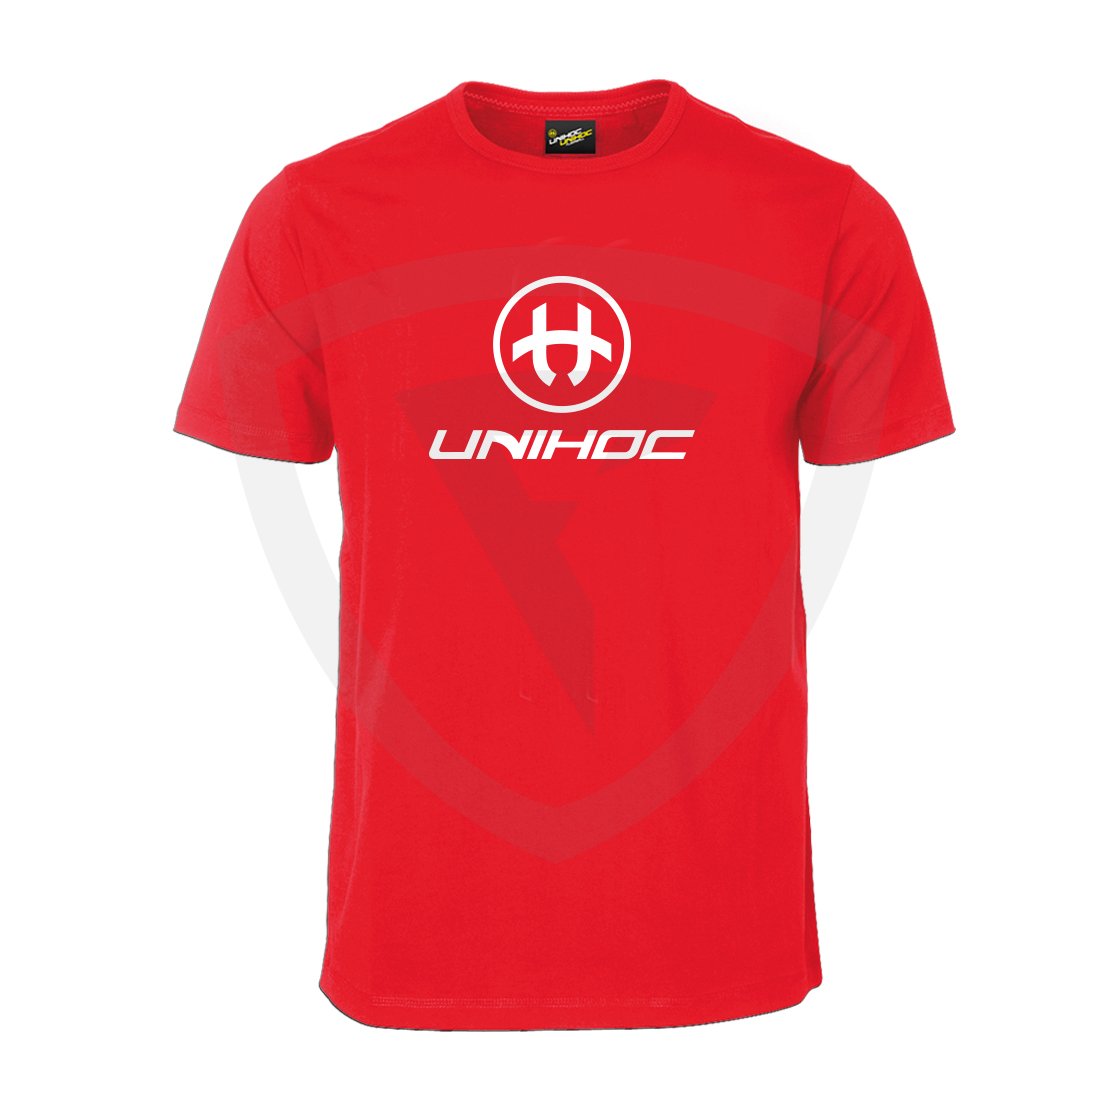 Unihoc T-shirt Storm Red JR 140 červená